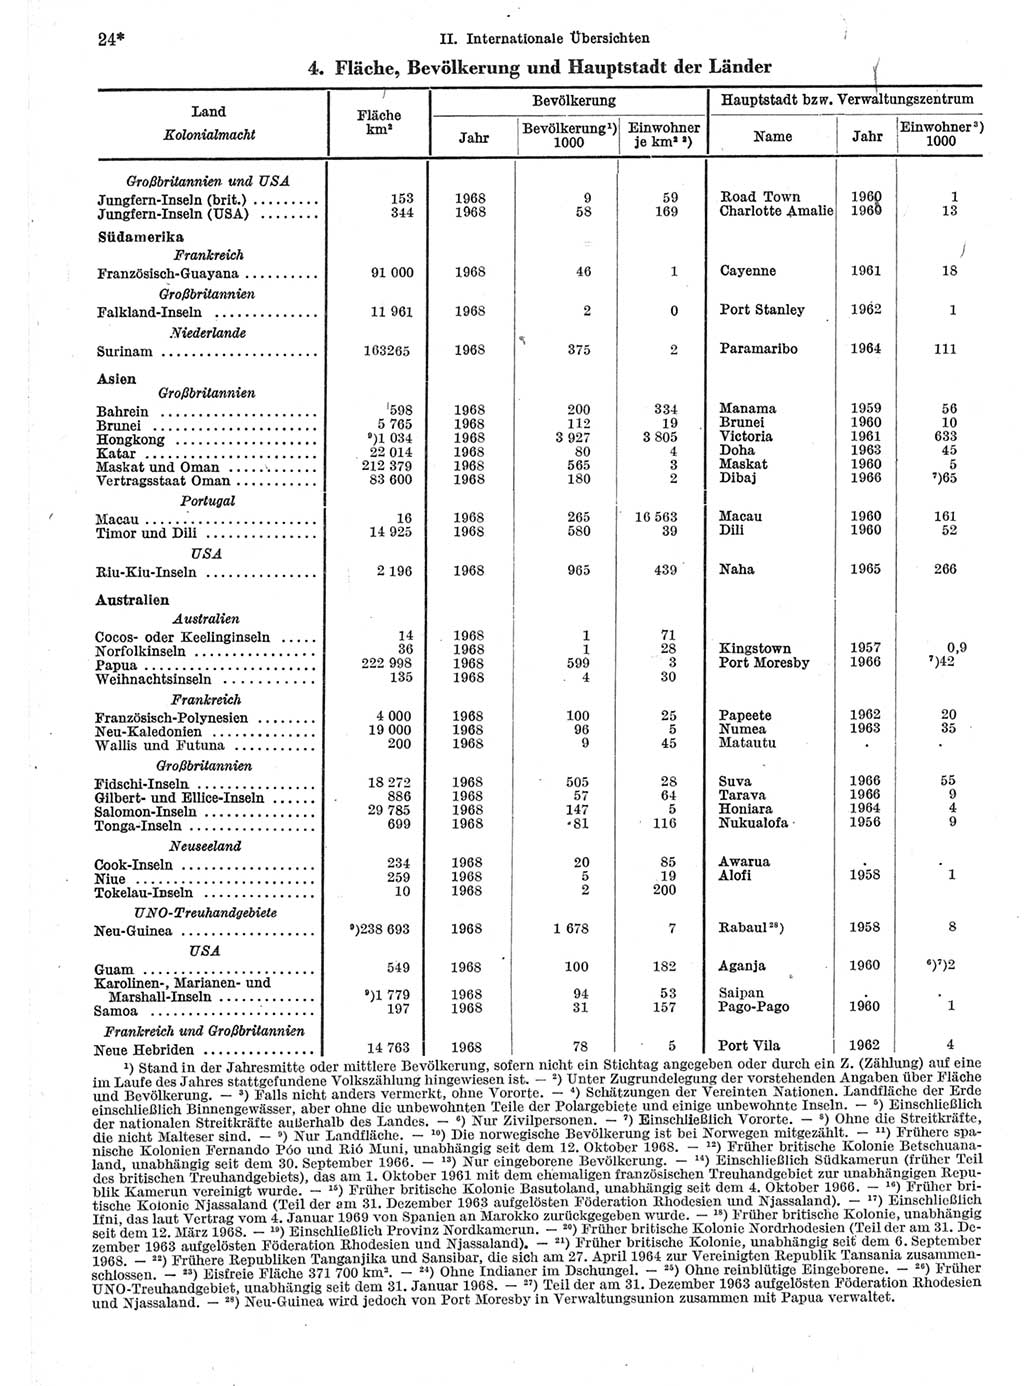 Statistisches Jahrbuch der Deutschen Demokratischen Republik (DDR) 1970, Seite 24 (Stat. Jb. DDR 1970, S. 24)